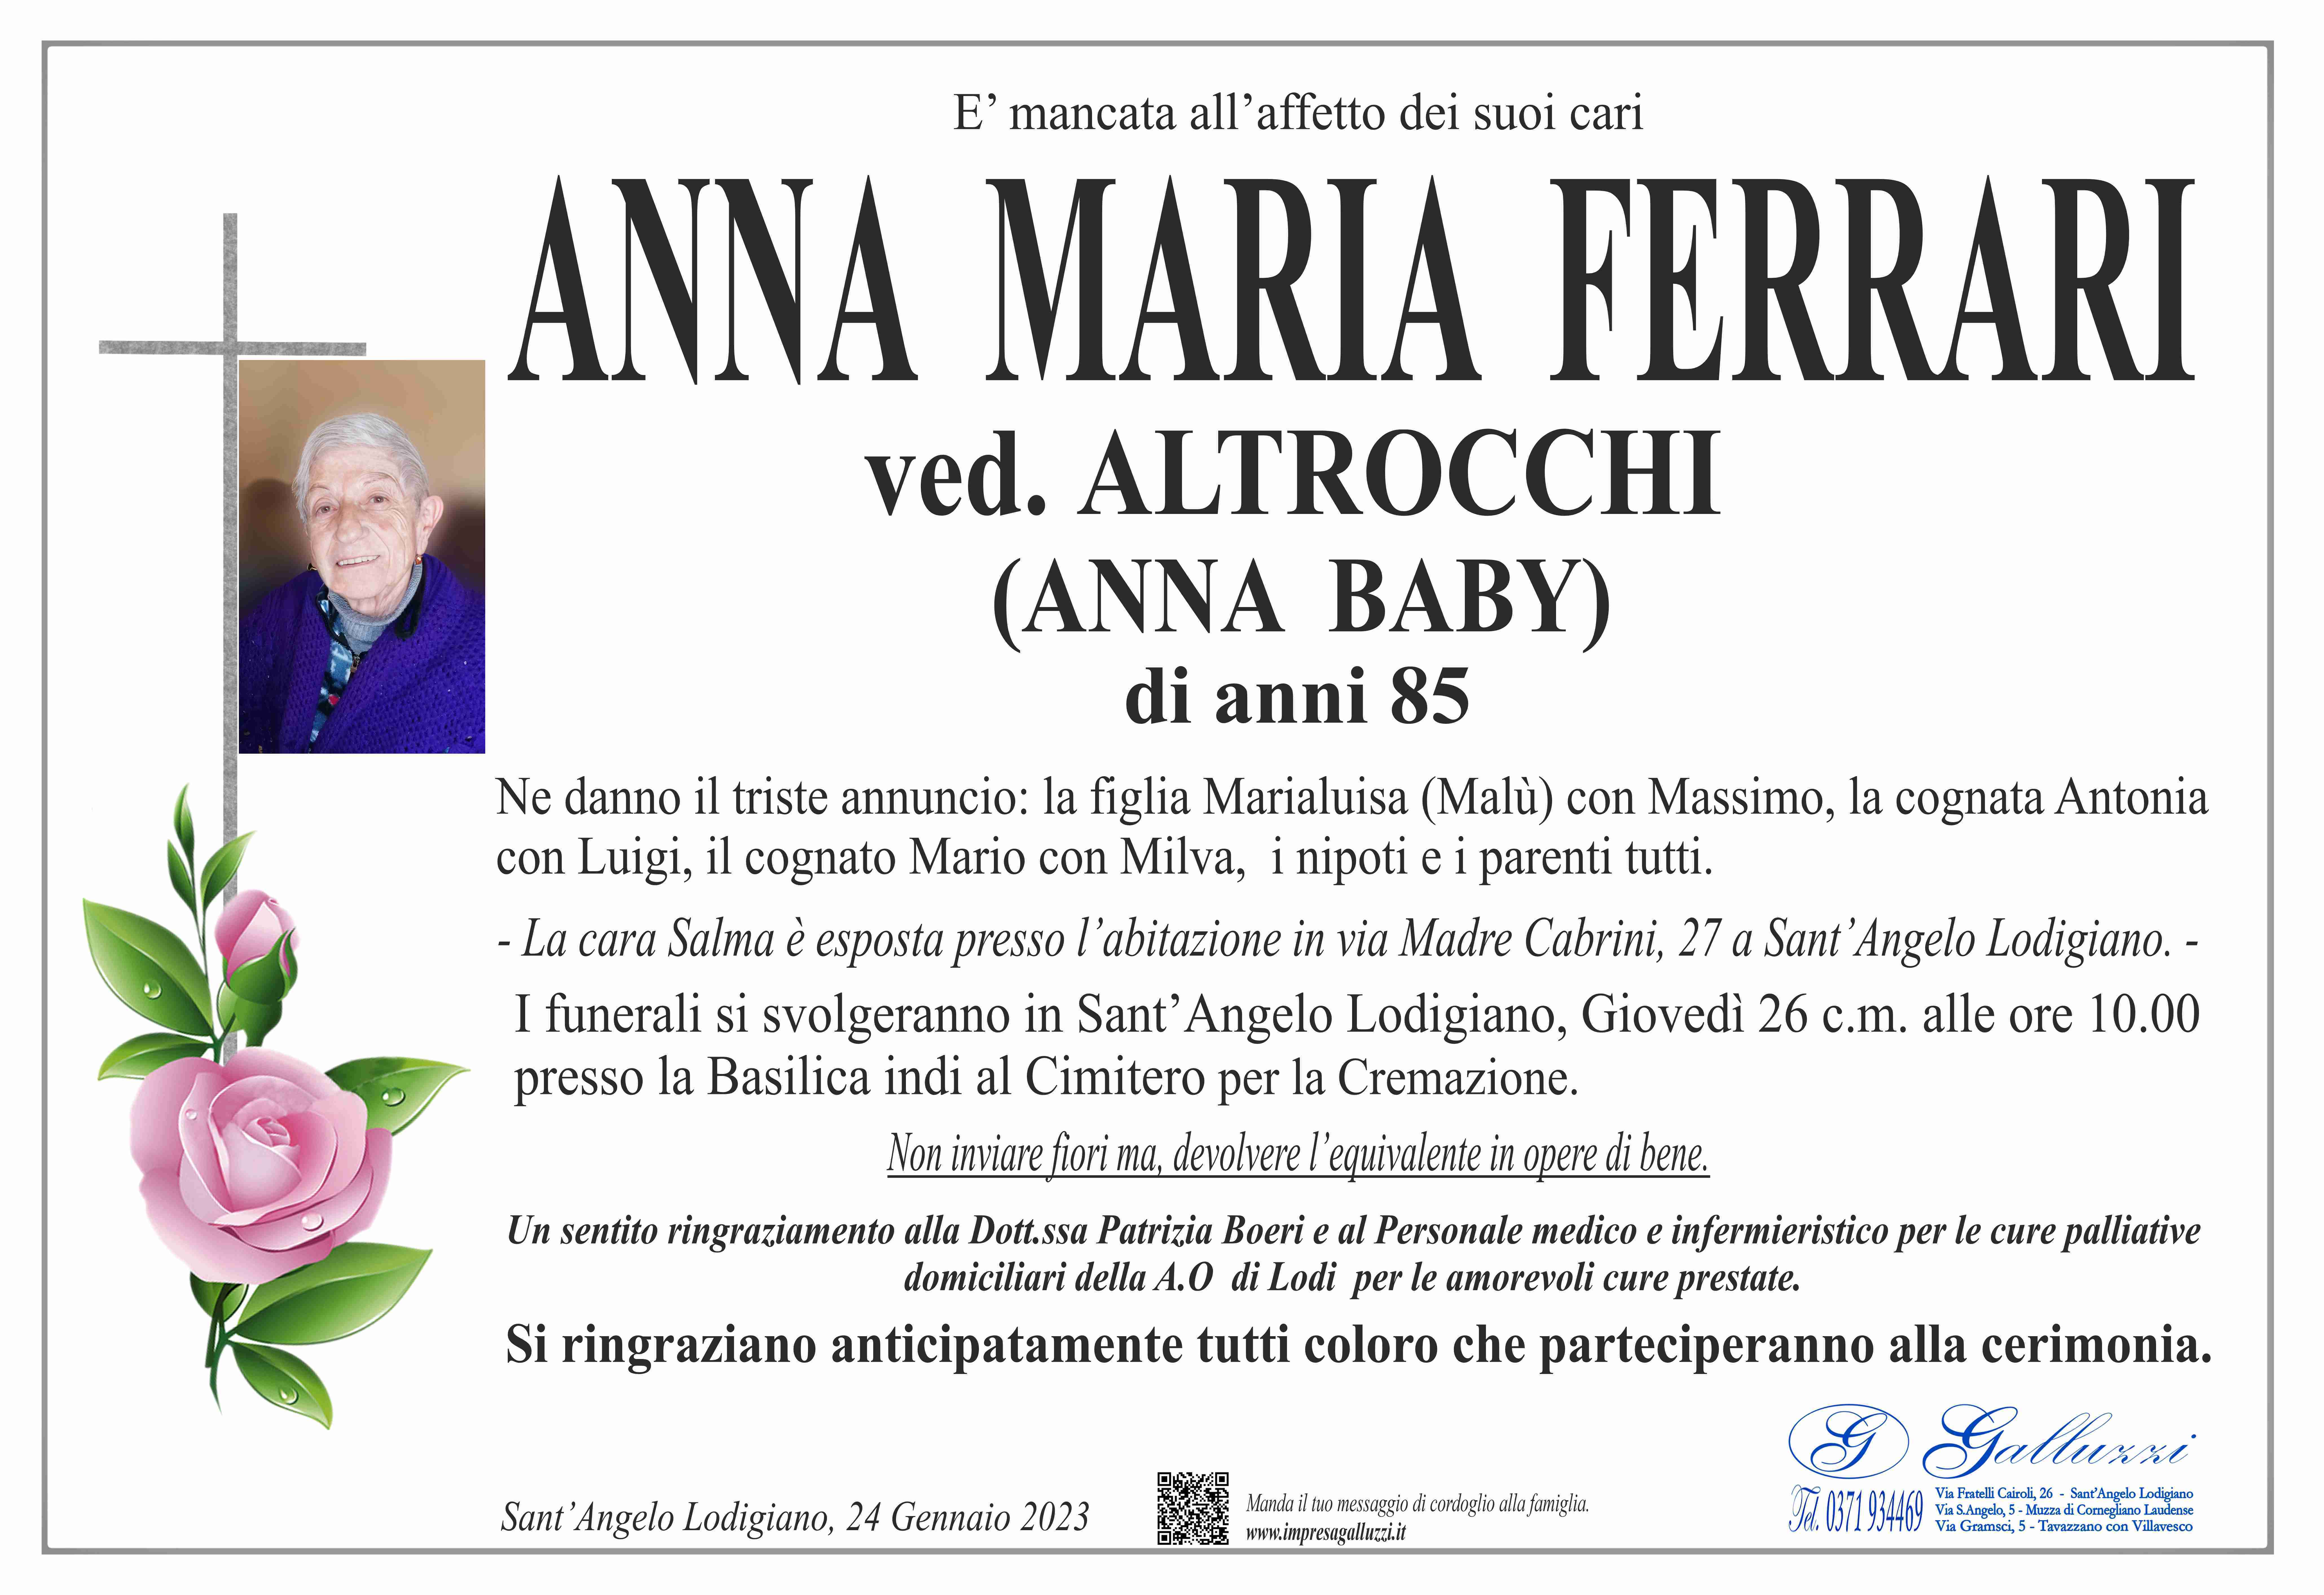 Anna Maria Ferrari